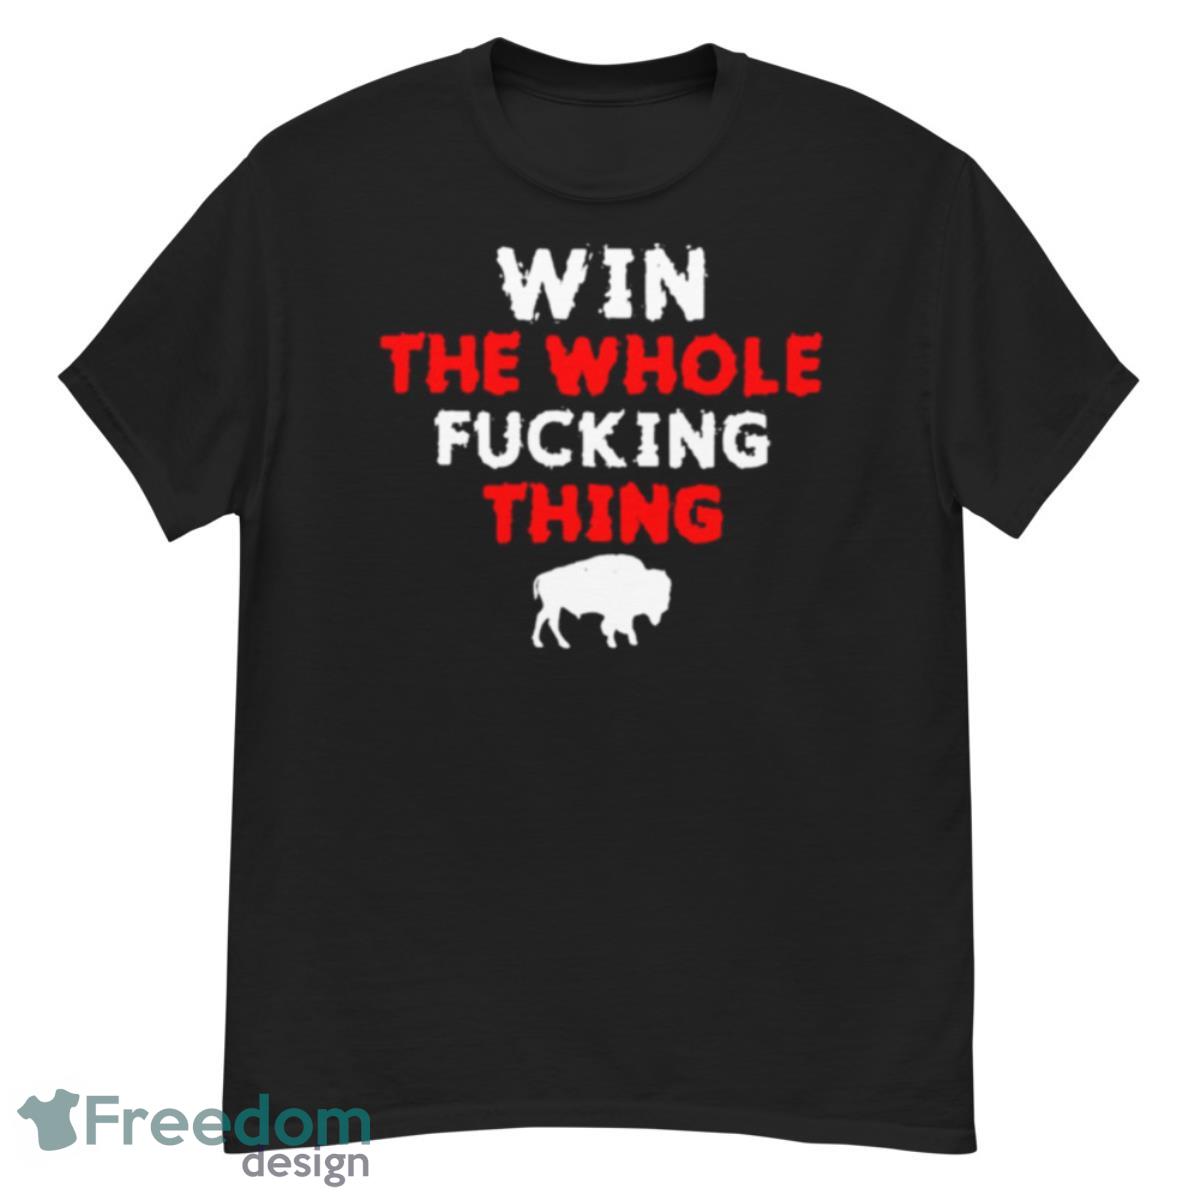 Buffalo Bills damar hamlin win the whole fucking thing shirt - G500 Men’s Classic T-Shirt